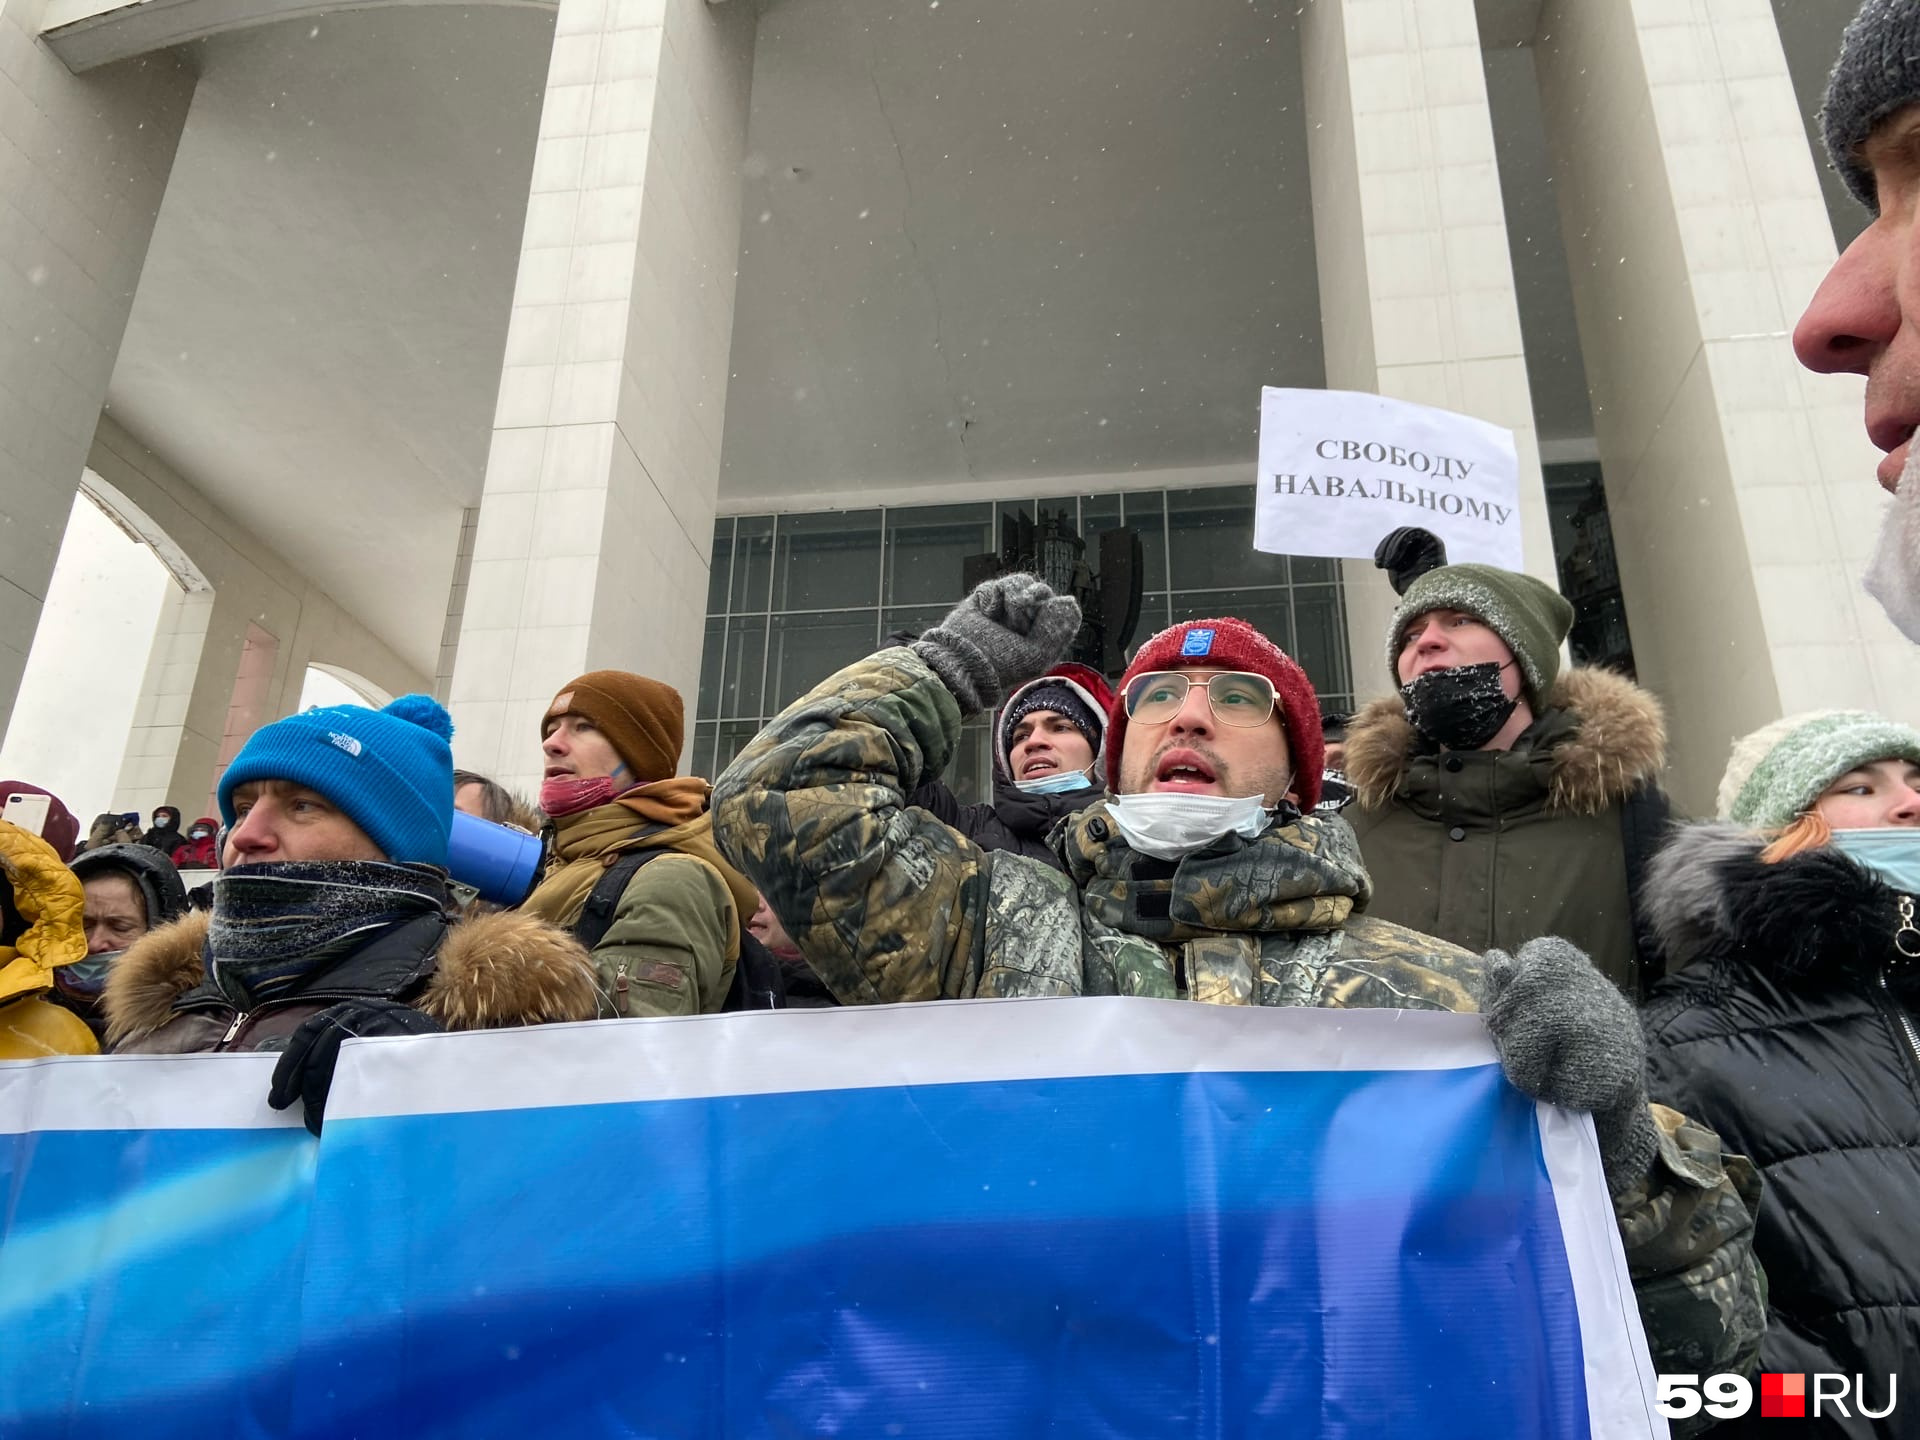 Во время акции люди поддерживали Навального, но отмечали, что вышли не столько ради него, сколько ради себя